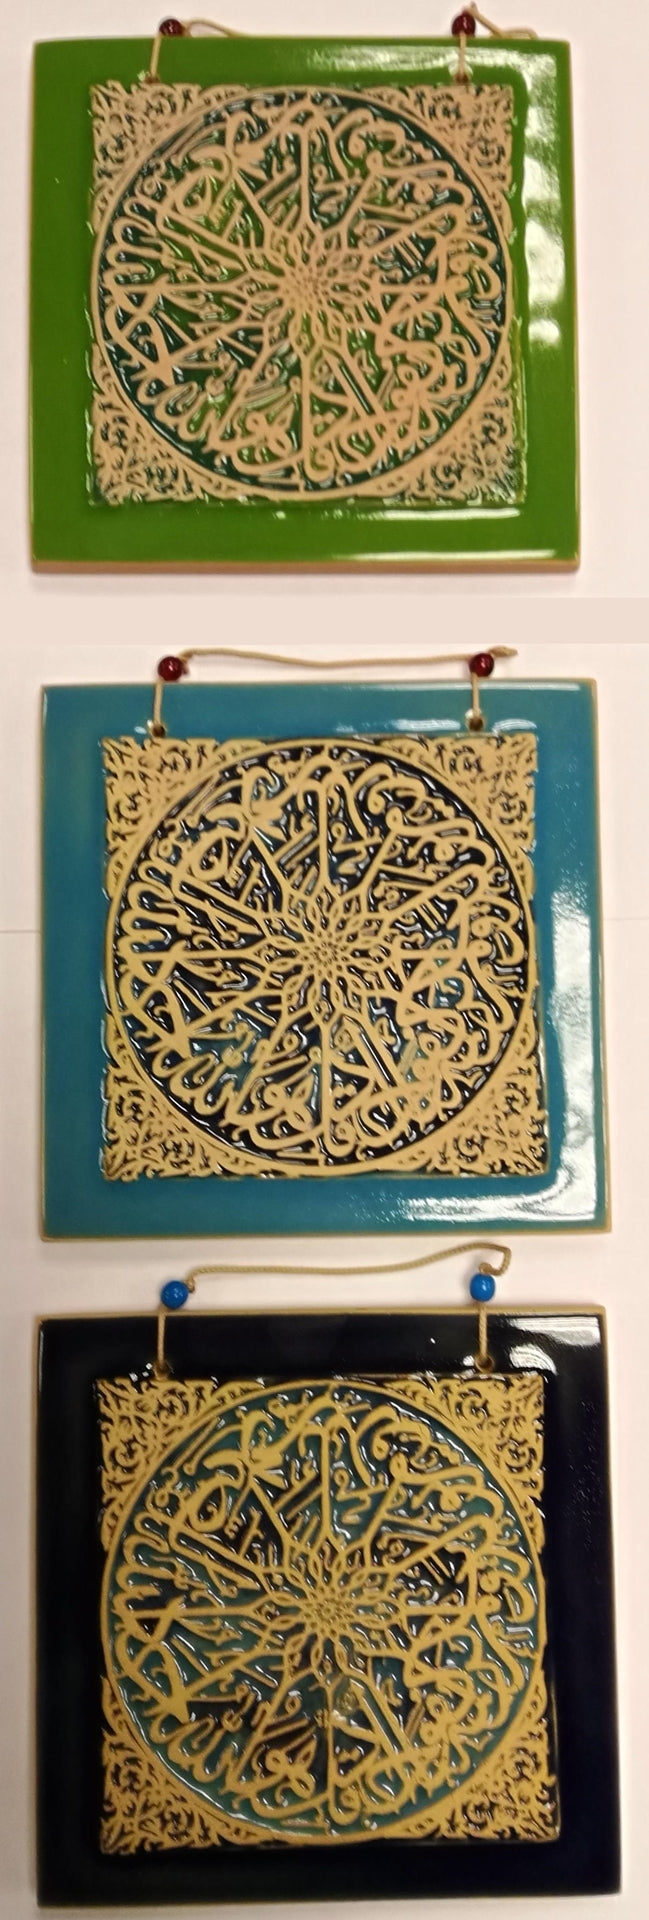 Surah Al-Ikhlas Tile